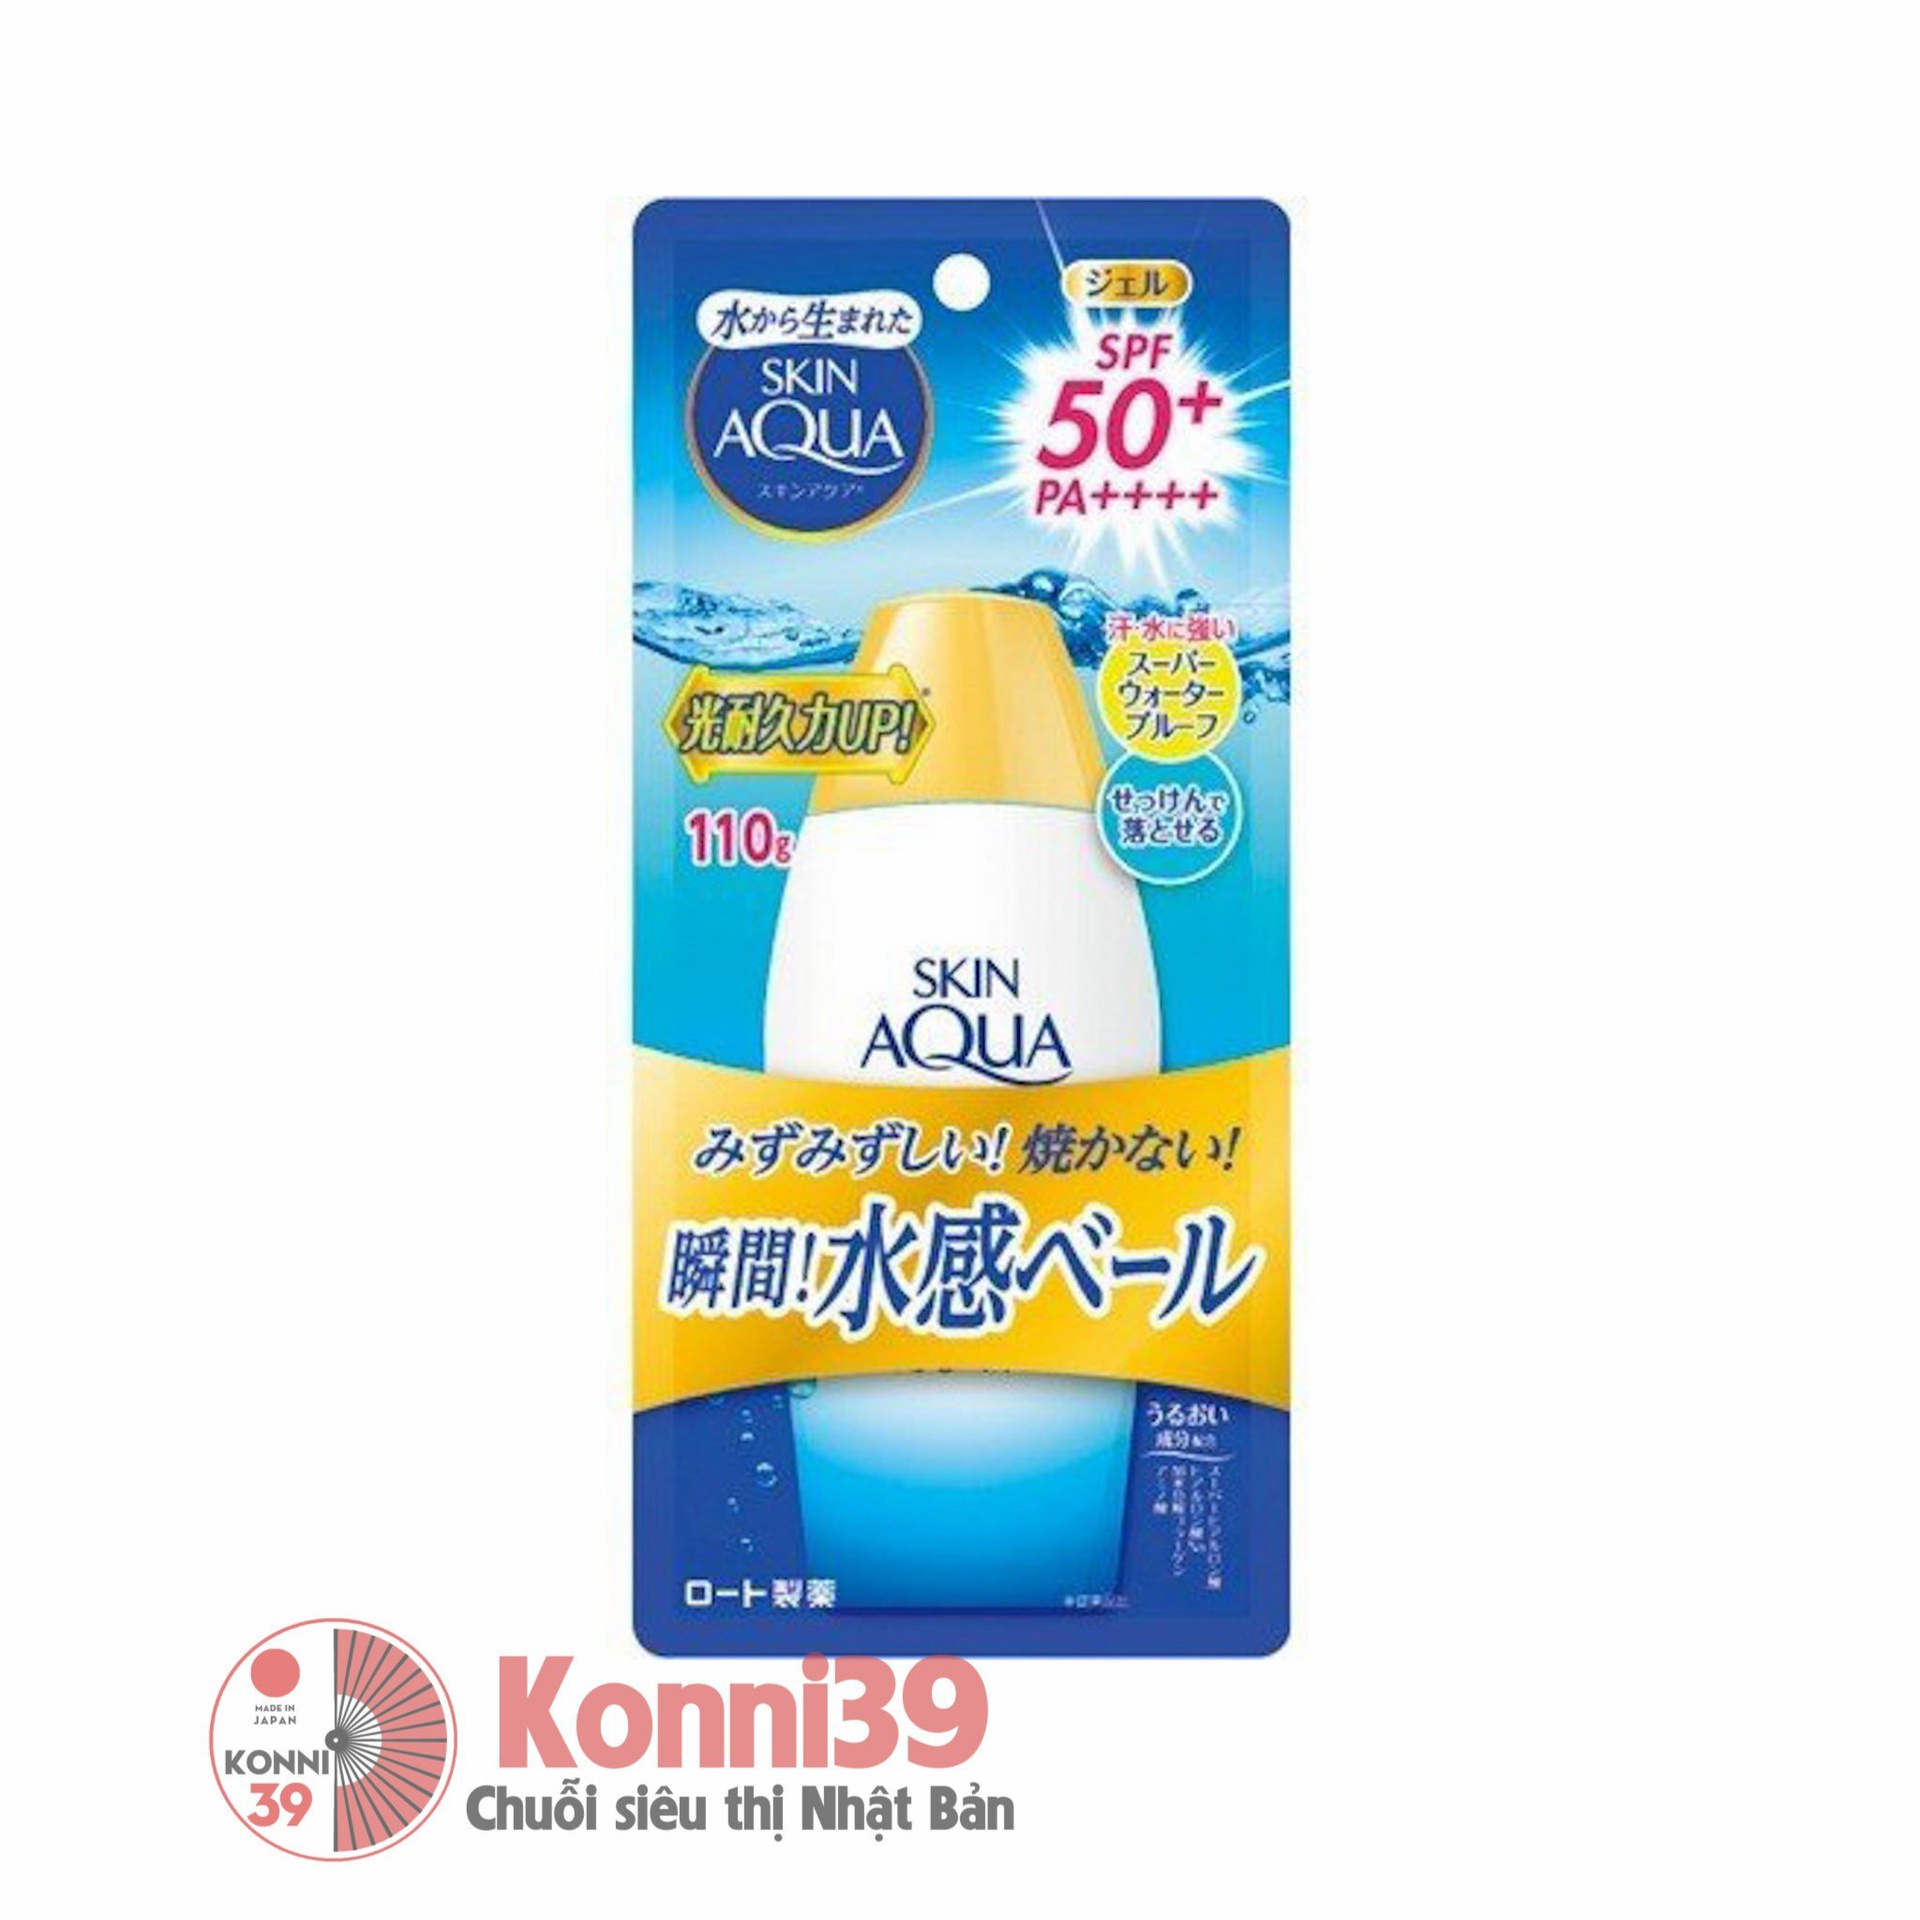 Kem chống nắng Skin Aqua Super Waterproof dạng Gel dưỡng ẩm SPF50+ PA+++ 110g